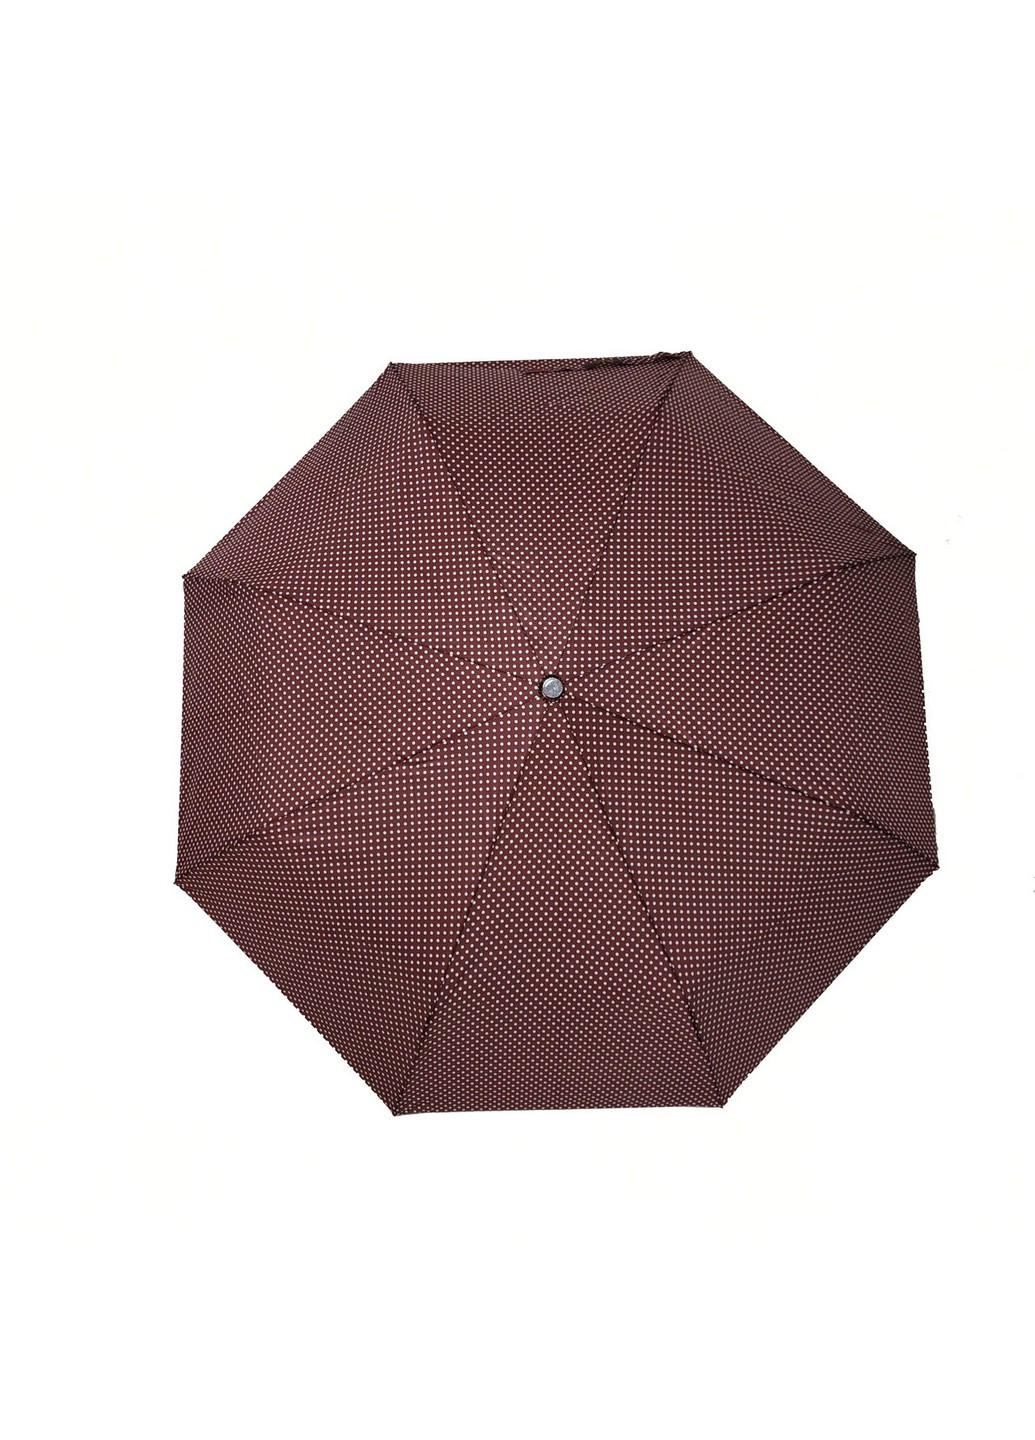 Женский зонт механический 97 см SL (259264162)